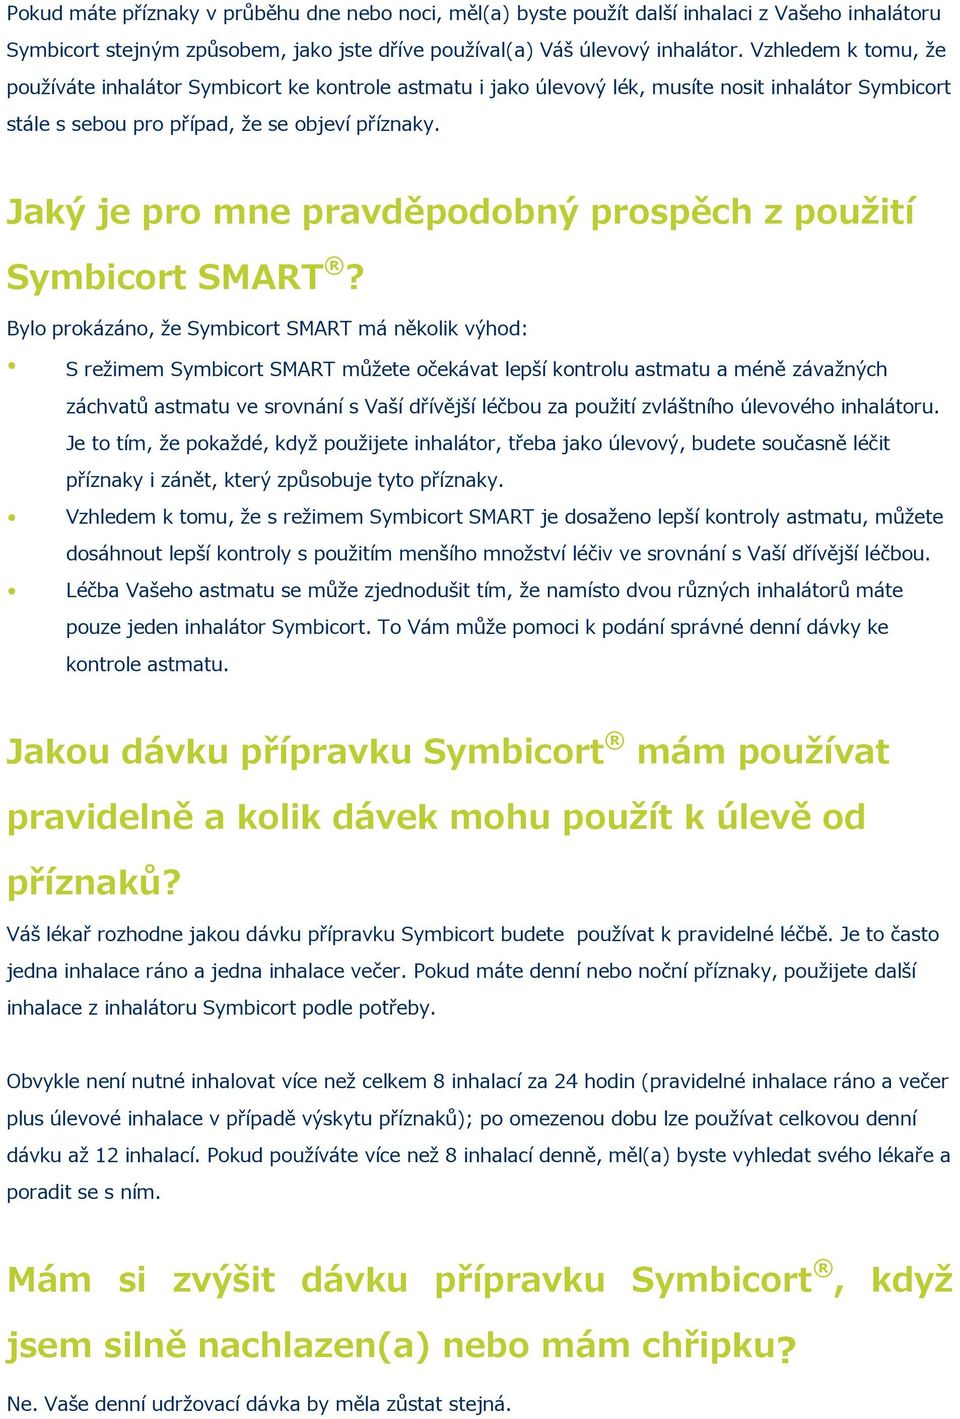 Jaký je pro mne pravděpodobný prospěch z použití Symbicort SMART?